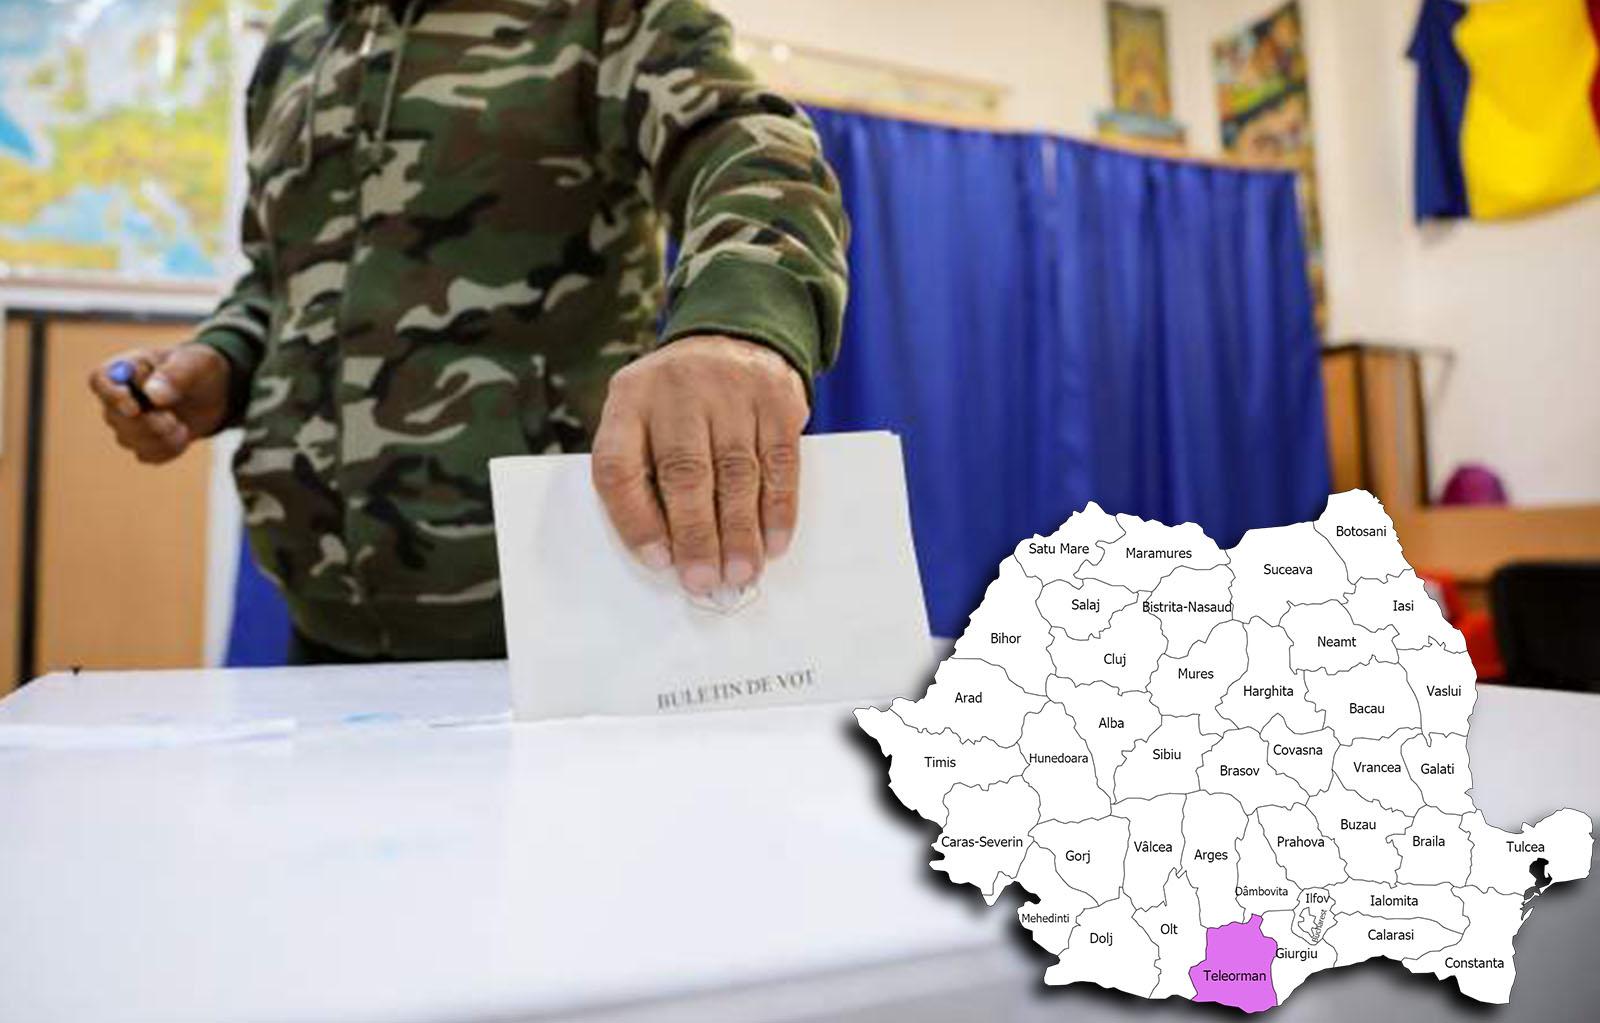 Rezultate alegeri parlamentare 2020 în județul Teleorman. Cine câștigă alegerile pentru Senat și Camera Deputaților